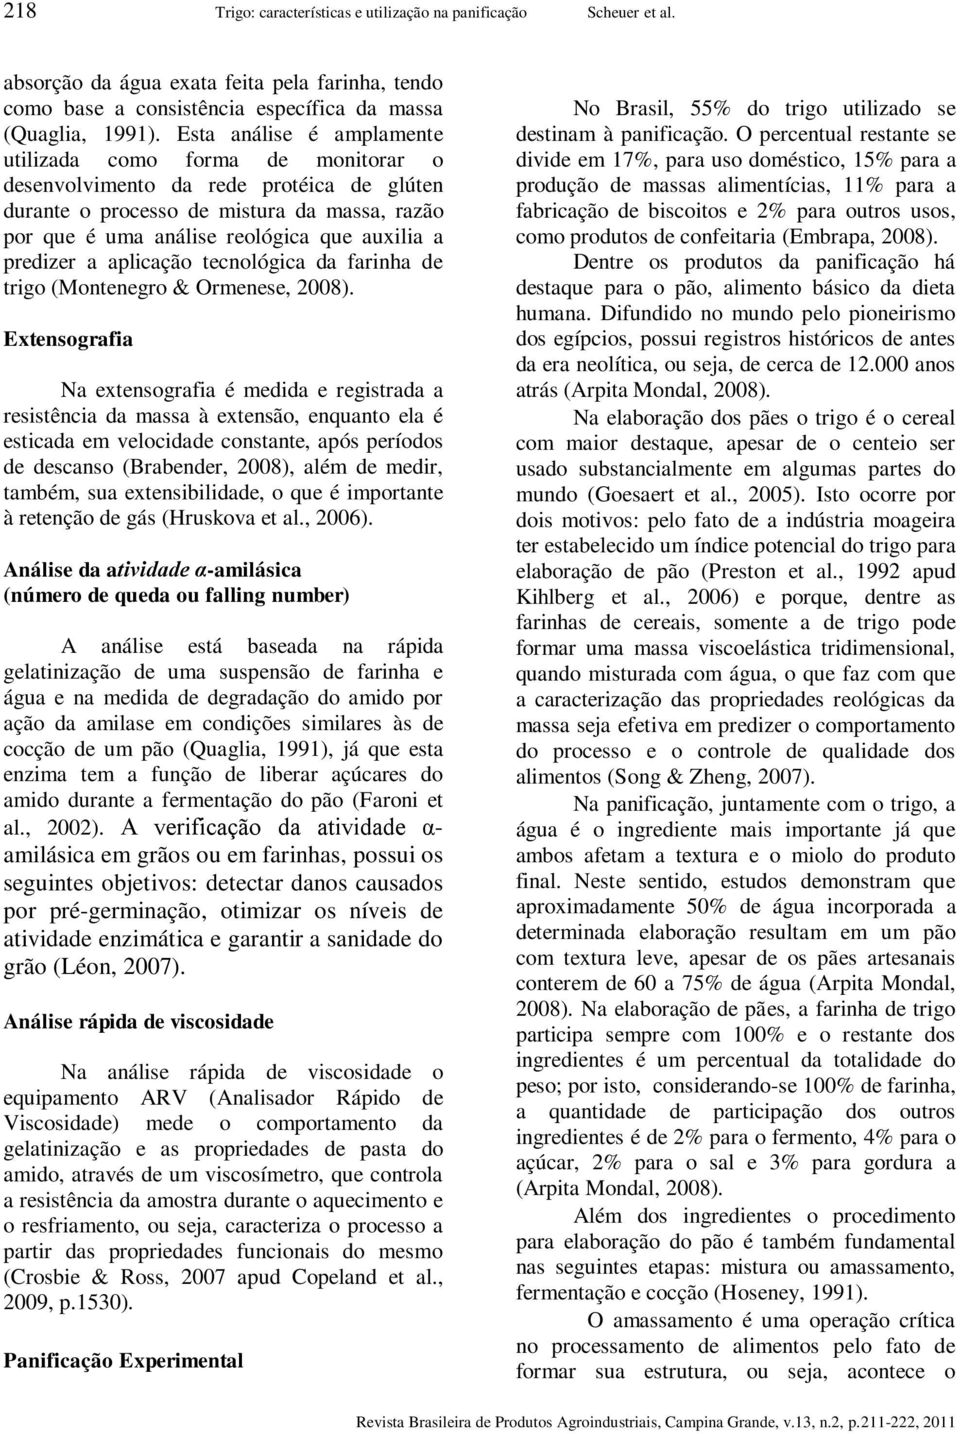 predizer a aplicação tecnológica da farinha de trigo (Montenegro & Ormenese, 2008).